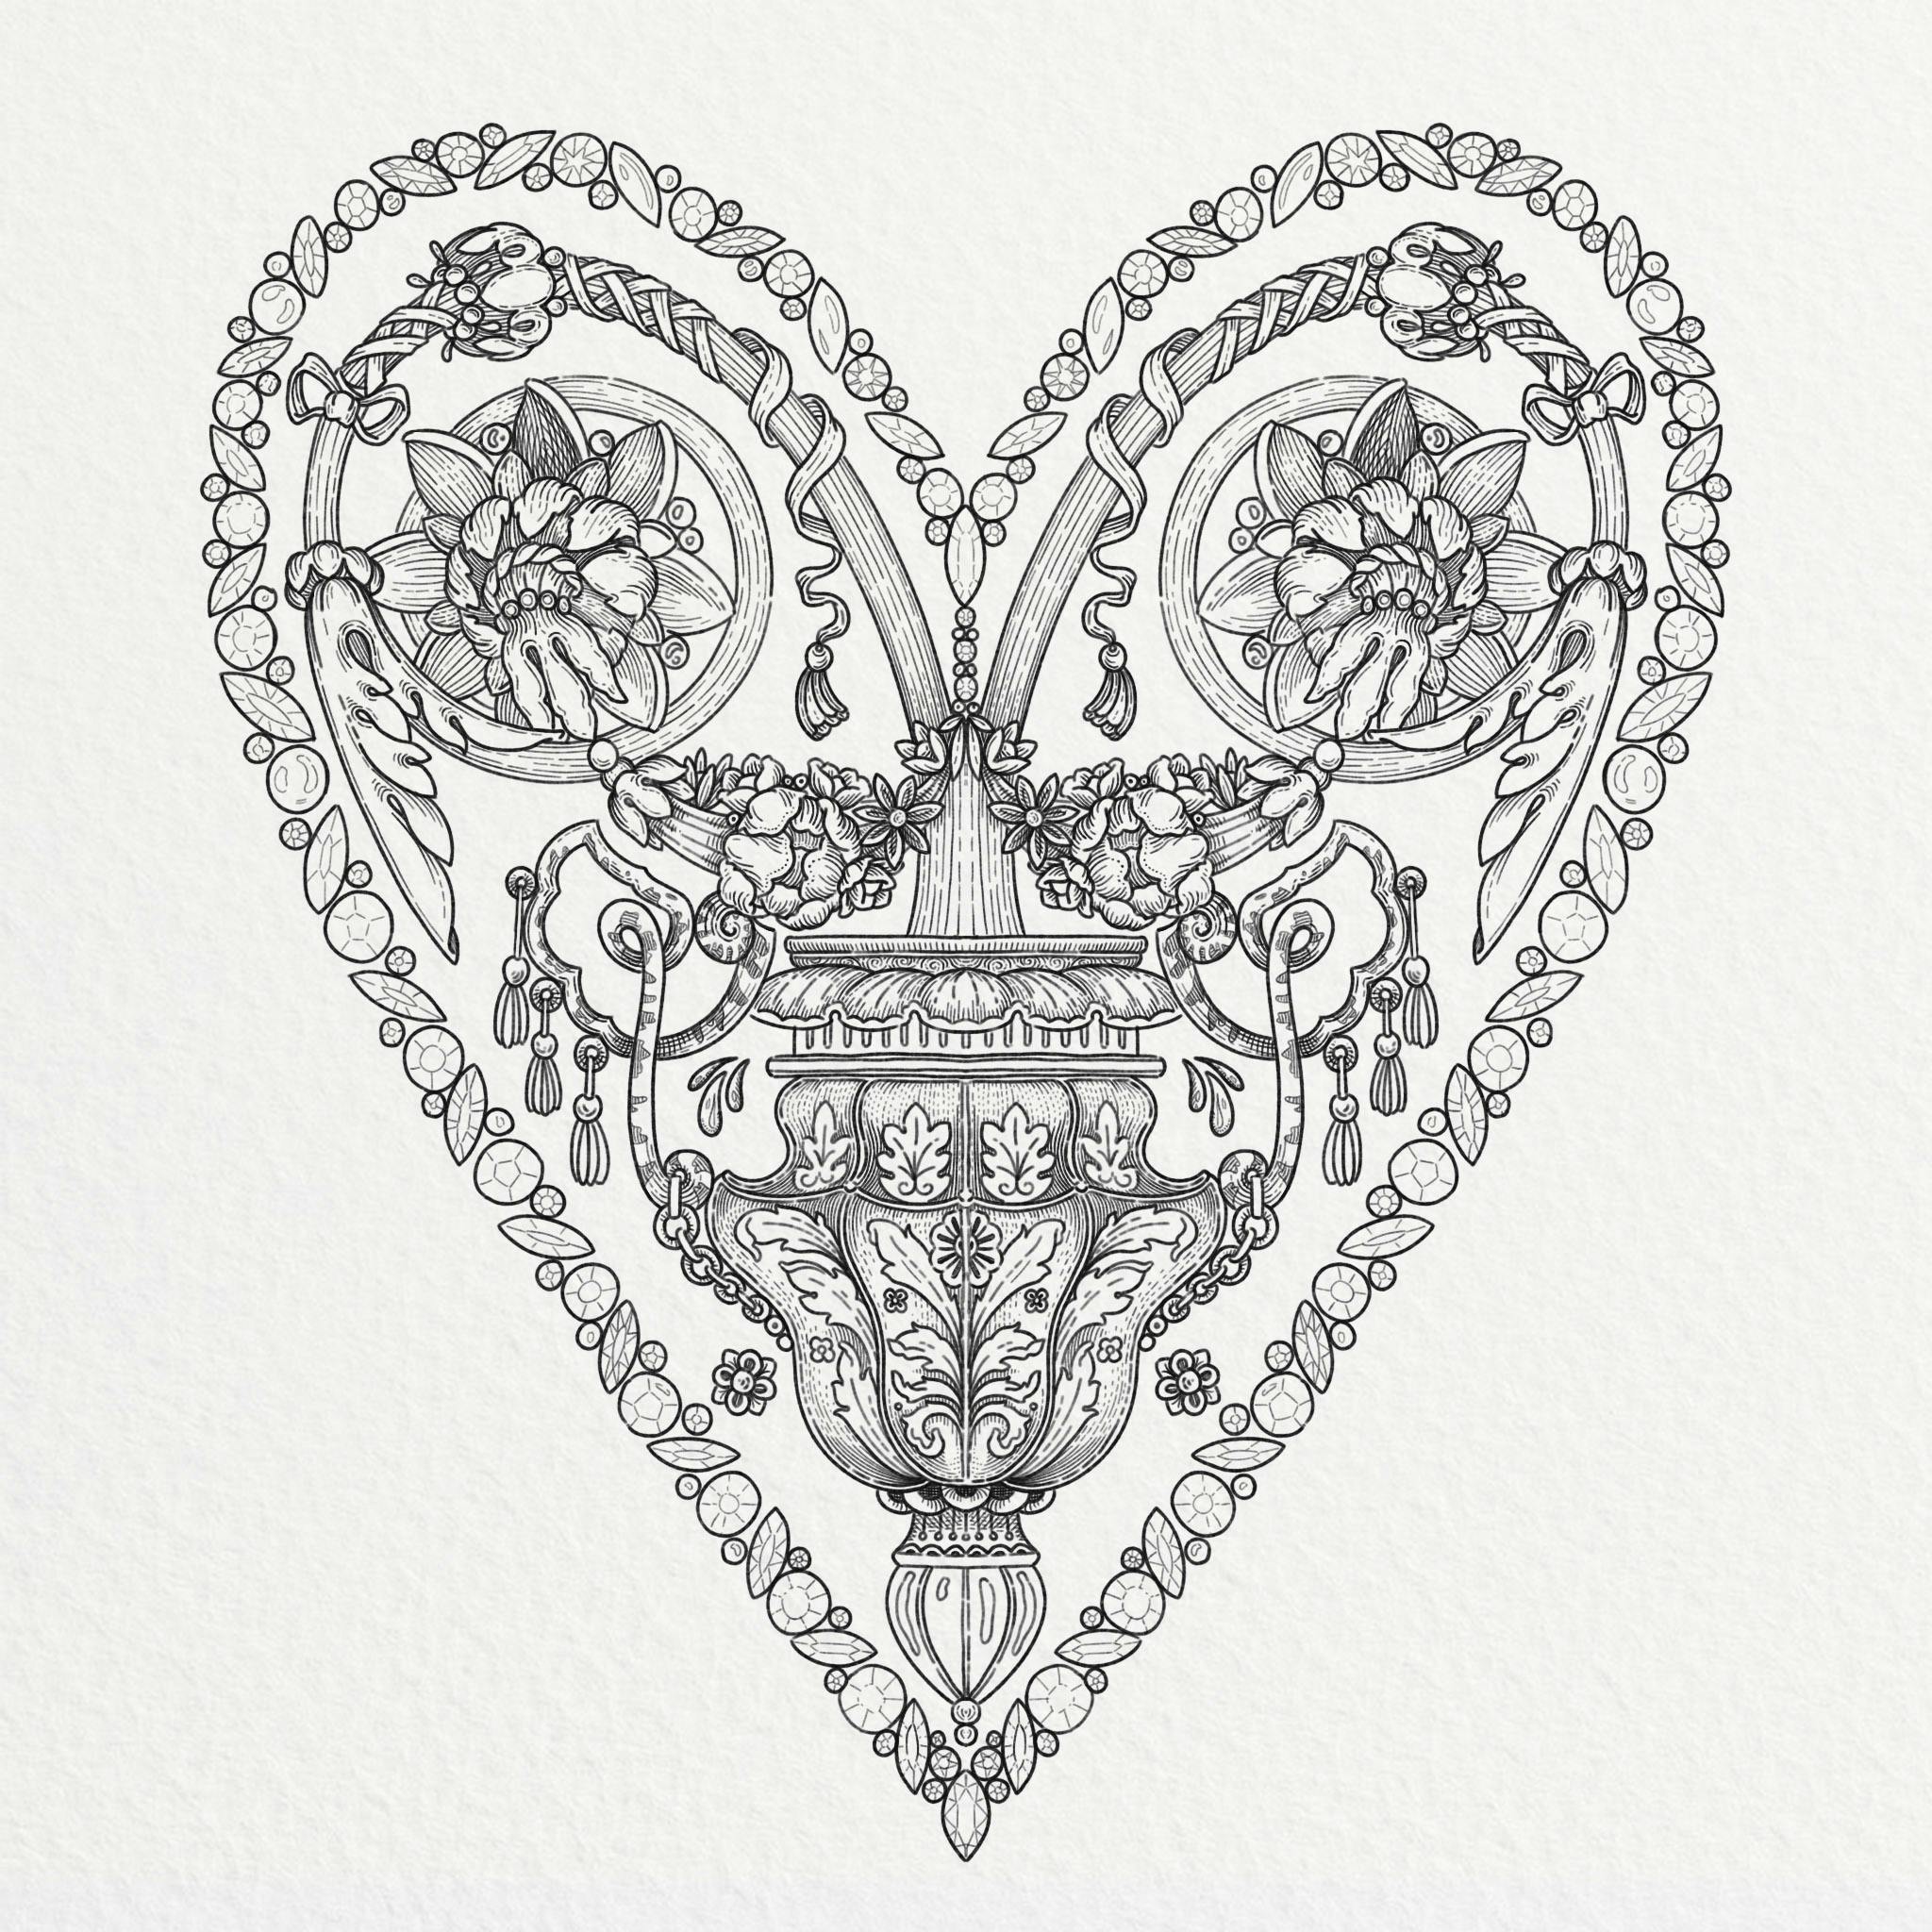 illustration de coeur ornementé avec des arabesques, des fleurs et des diamants